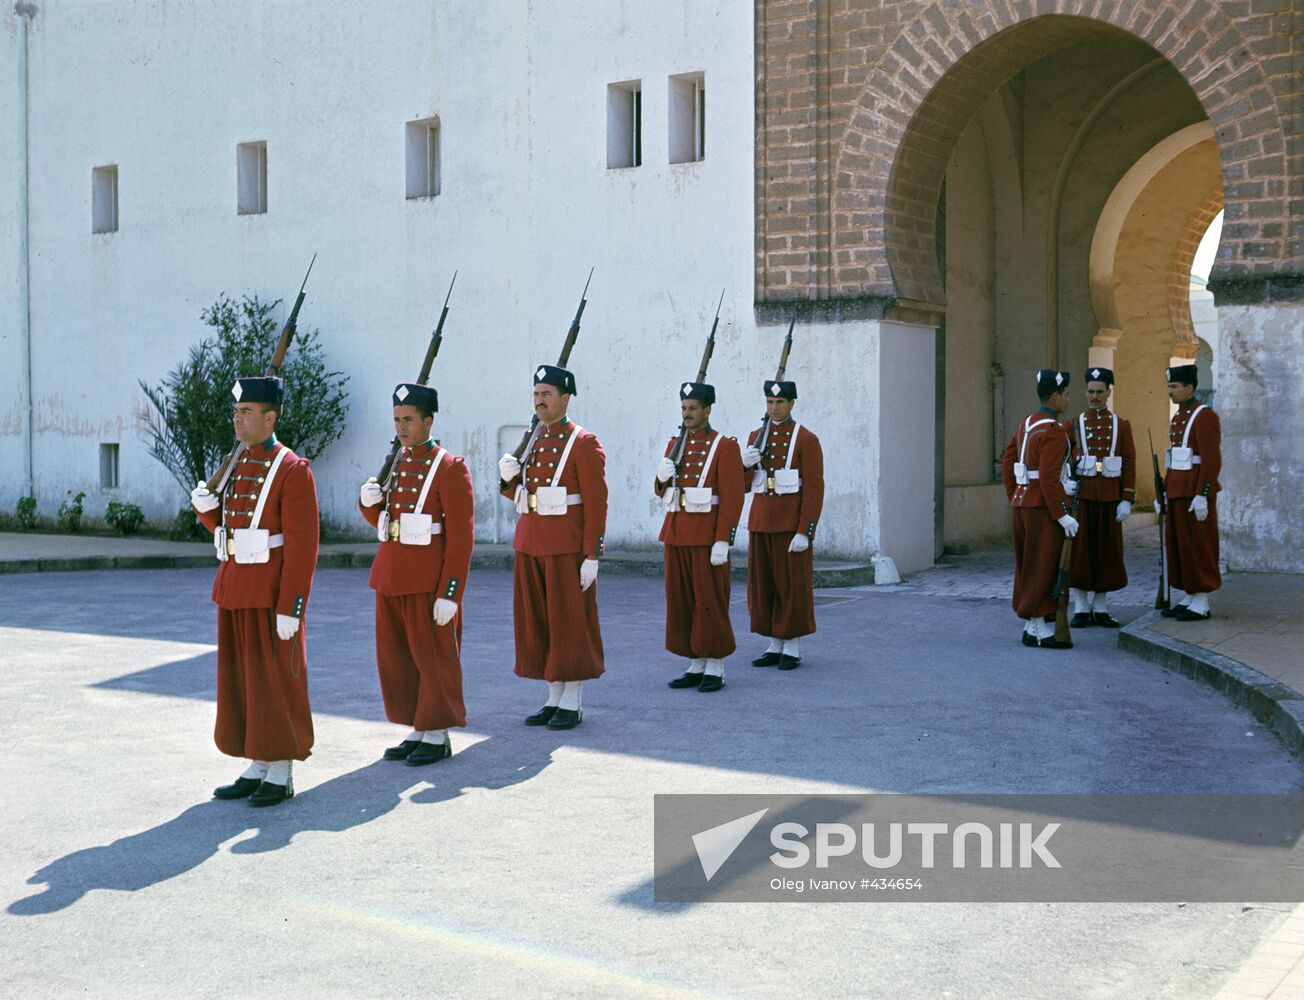 Royal Palace Guards